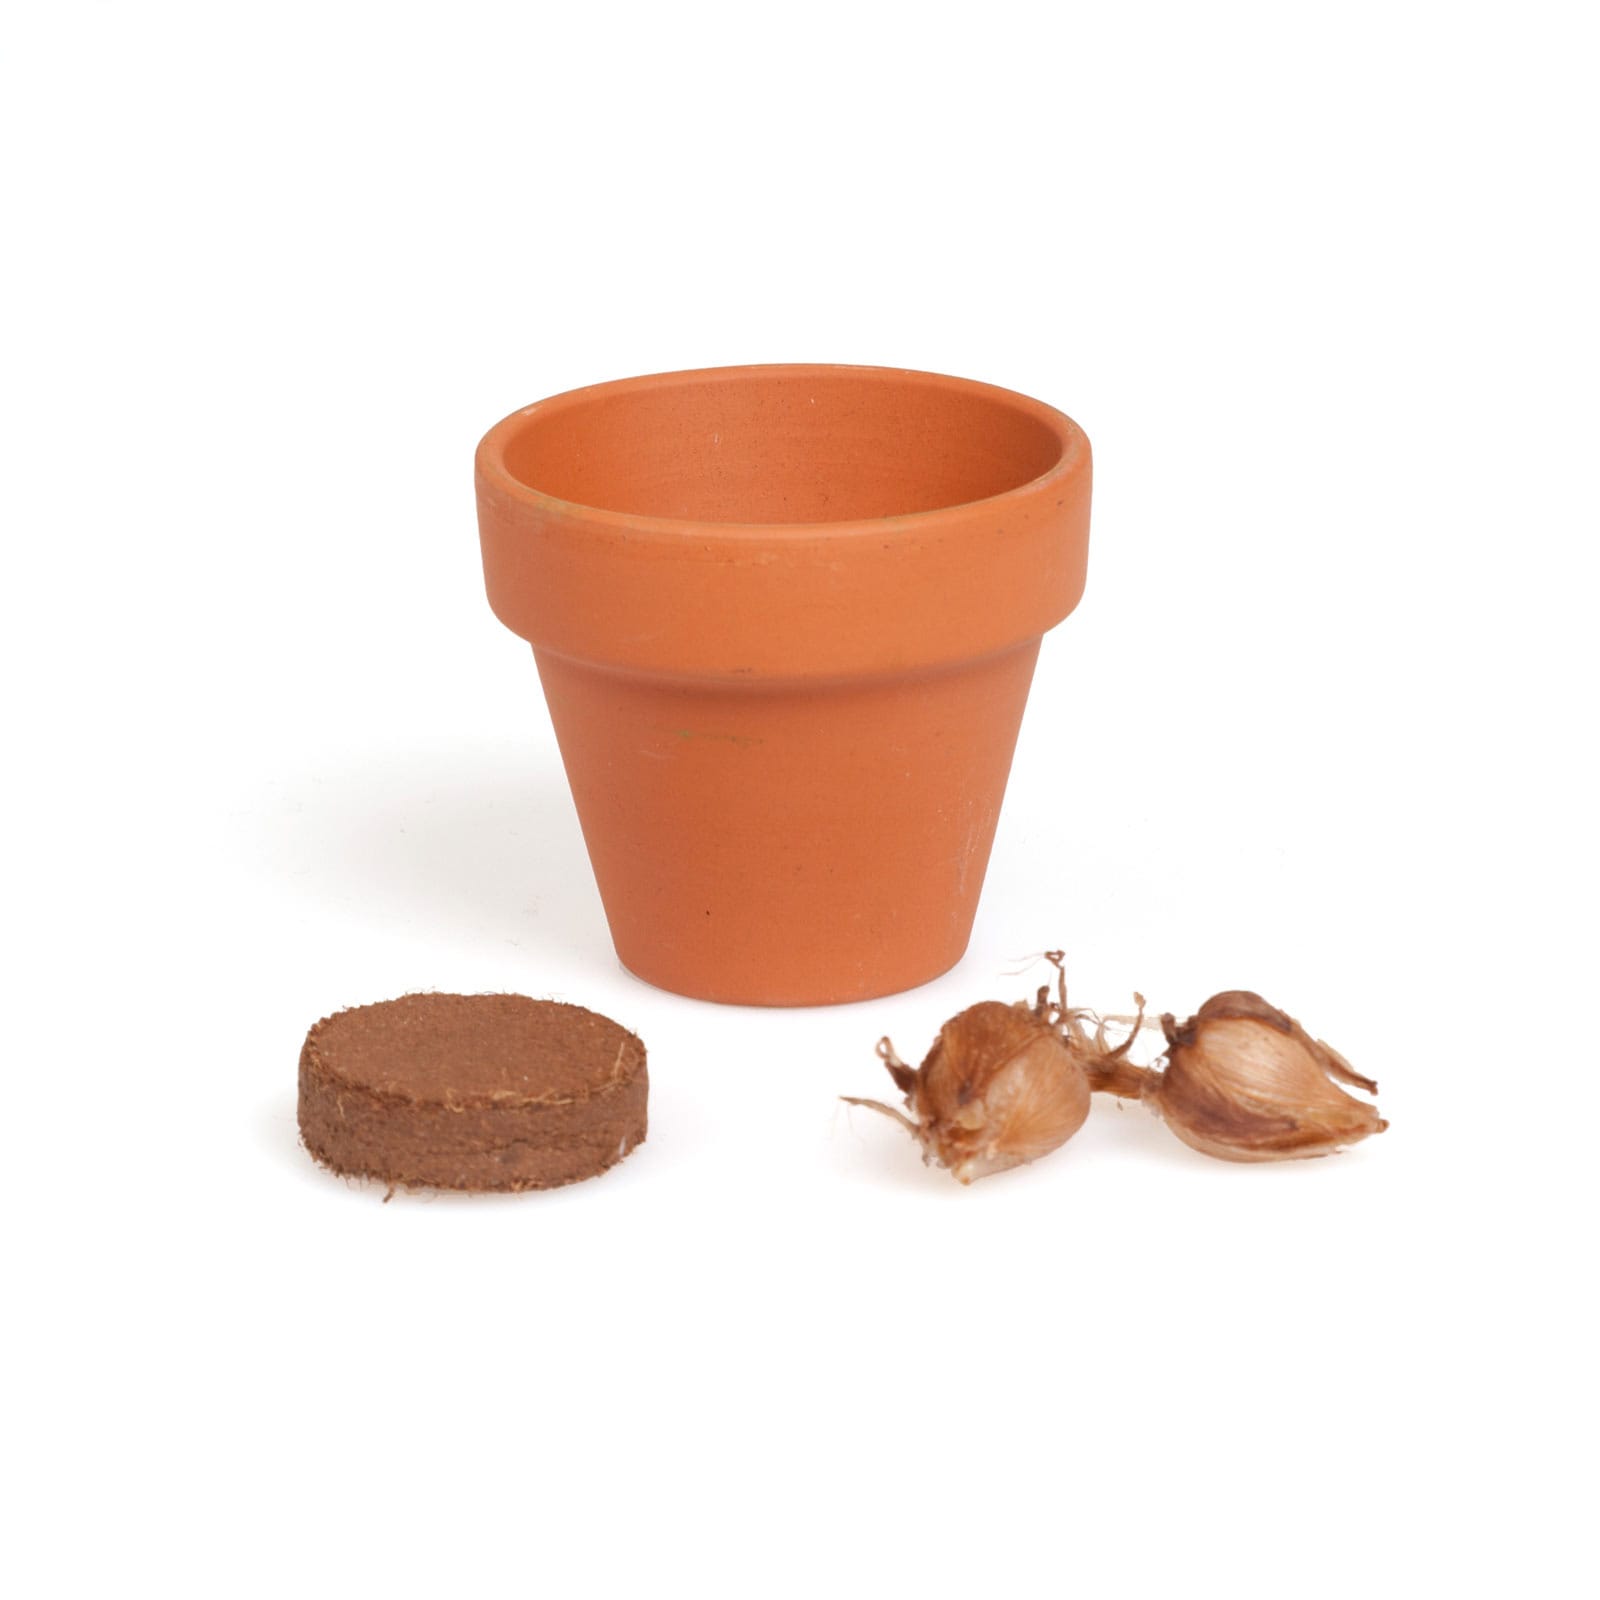 Mini-pot Trèfle à 4 feuilles, Science & nature